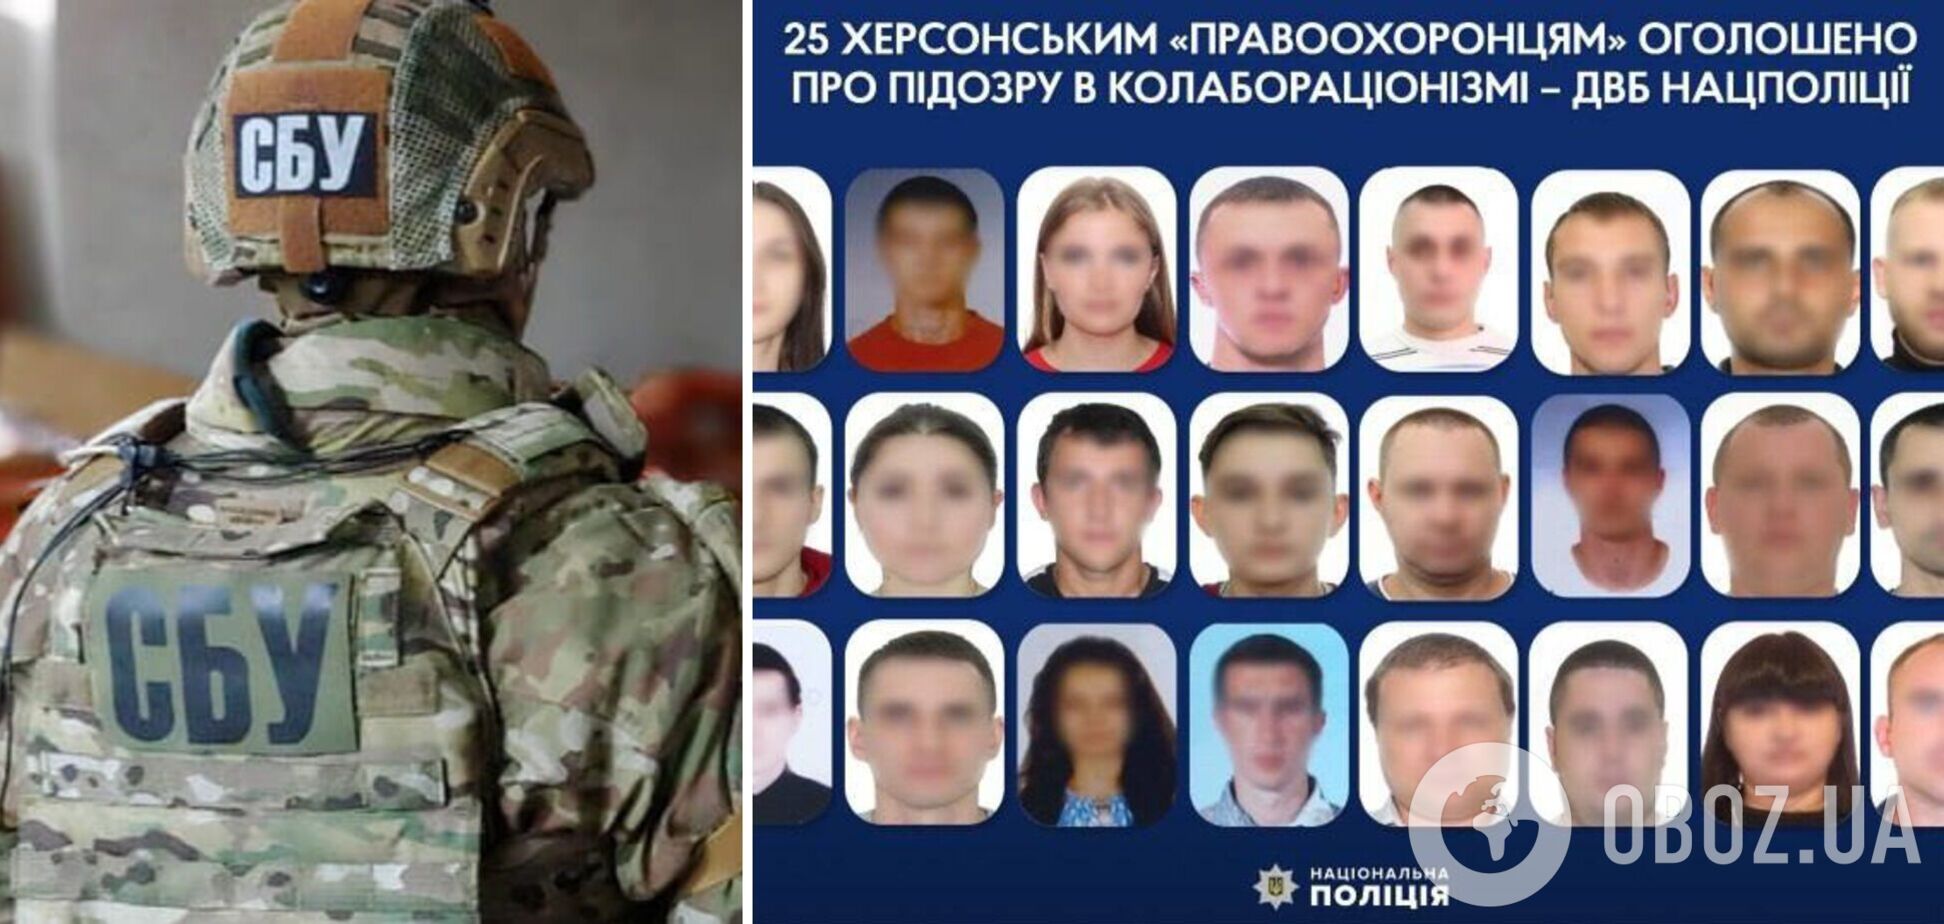 СБУ сообщила о подозрении 25 херсонским правоохранителям, предавшим Украину: полный список